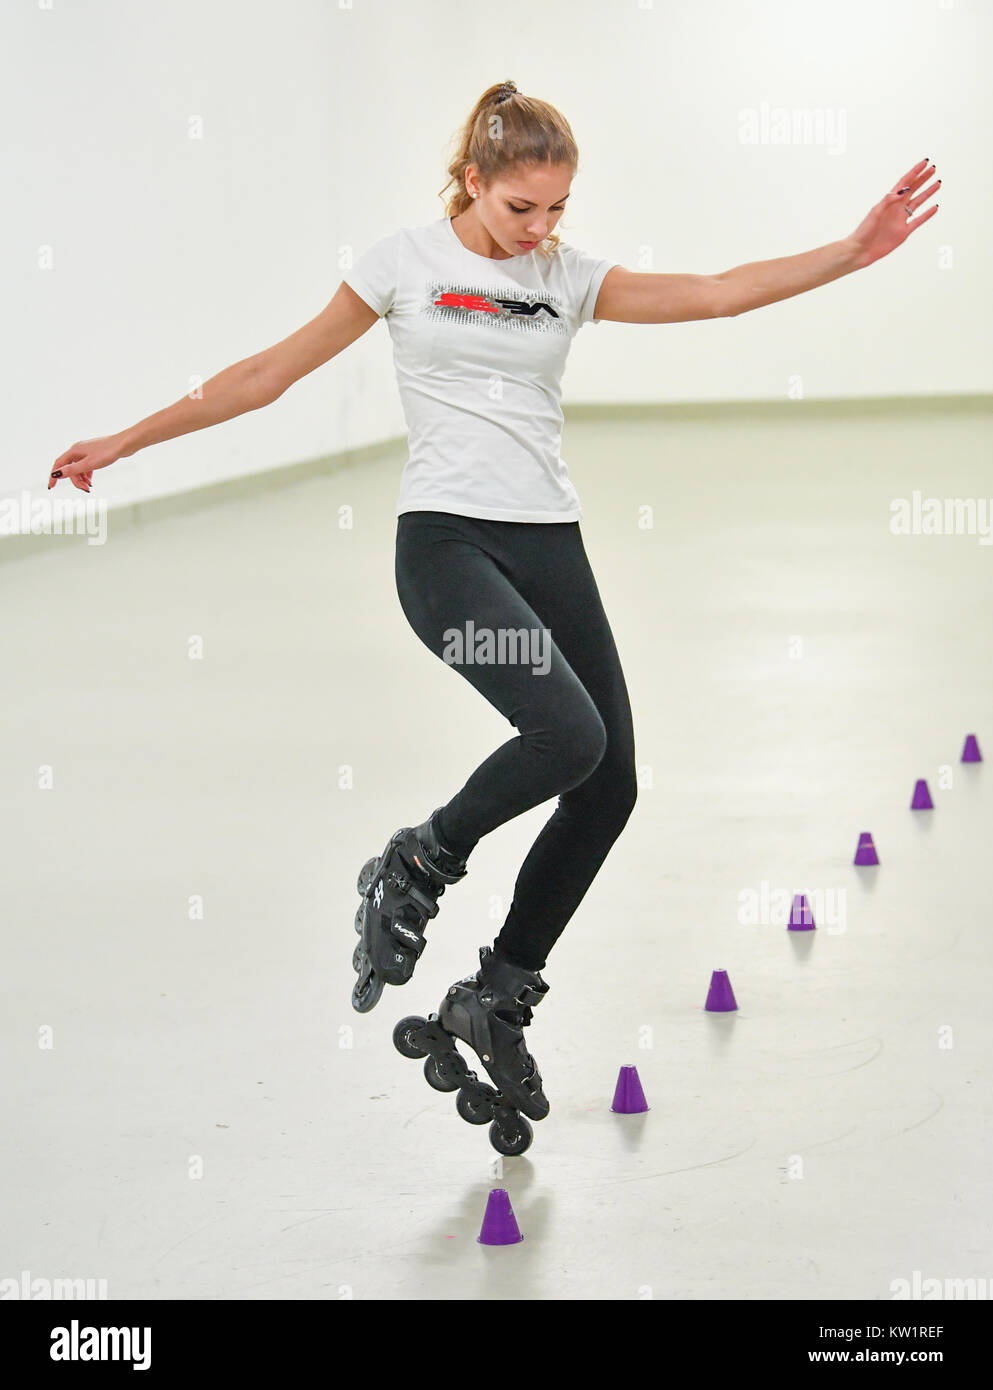 Frankfurt, Alemania. 28 dic, 2017. Daria rusa Kuznetsova prácticas el  freestyle-slalom sobre sus patines en línea en Frankfurt, Alemania, el 28  de diciembre de 2017. Actualmente, Daria Kuznetsova es el mejor del